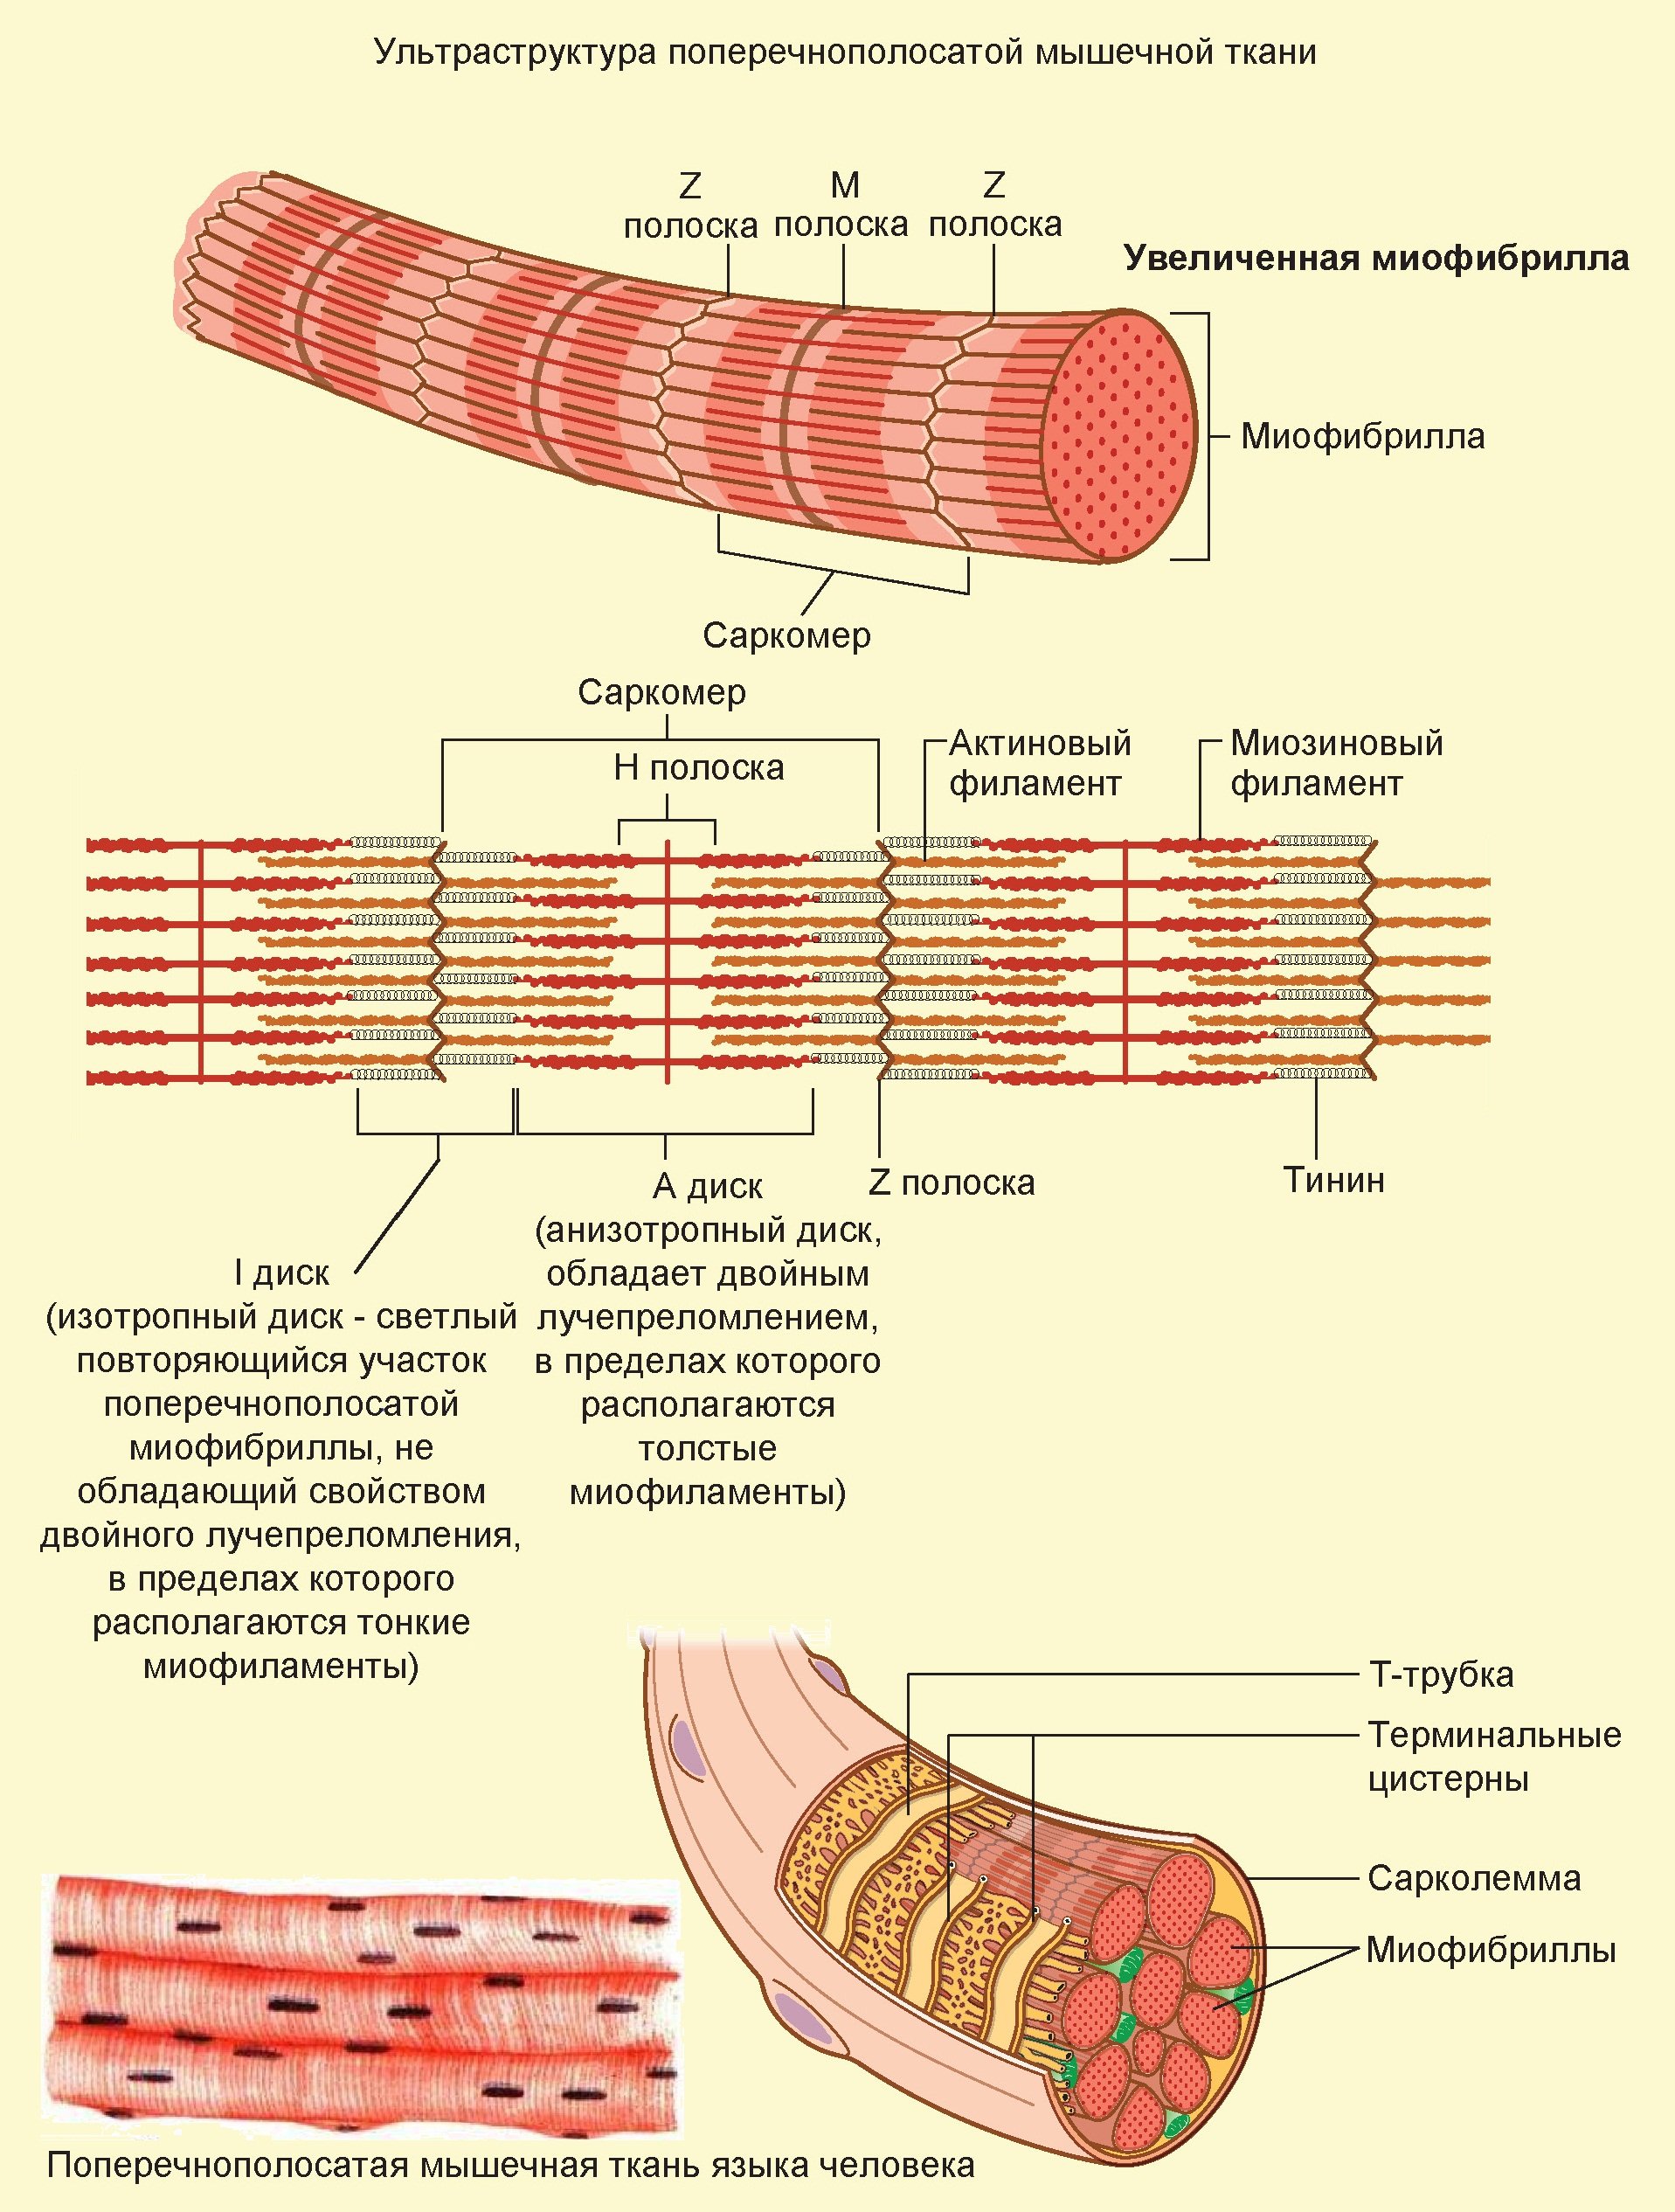 Поперечнополосатая скелетная мышечная ткань особенности строения. Скелетная мышечная ткань саркомер. Структура поперечно полосатого мышечного волокна. Ультраструктура скелетного мышечного волокна. Схема поперечно полосатого мышечного волокна.